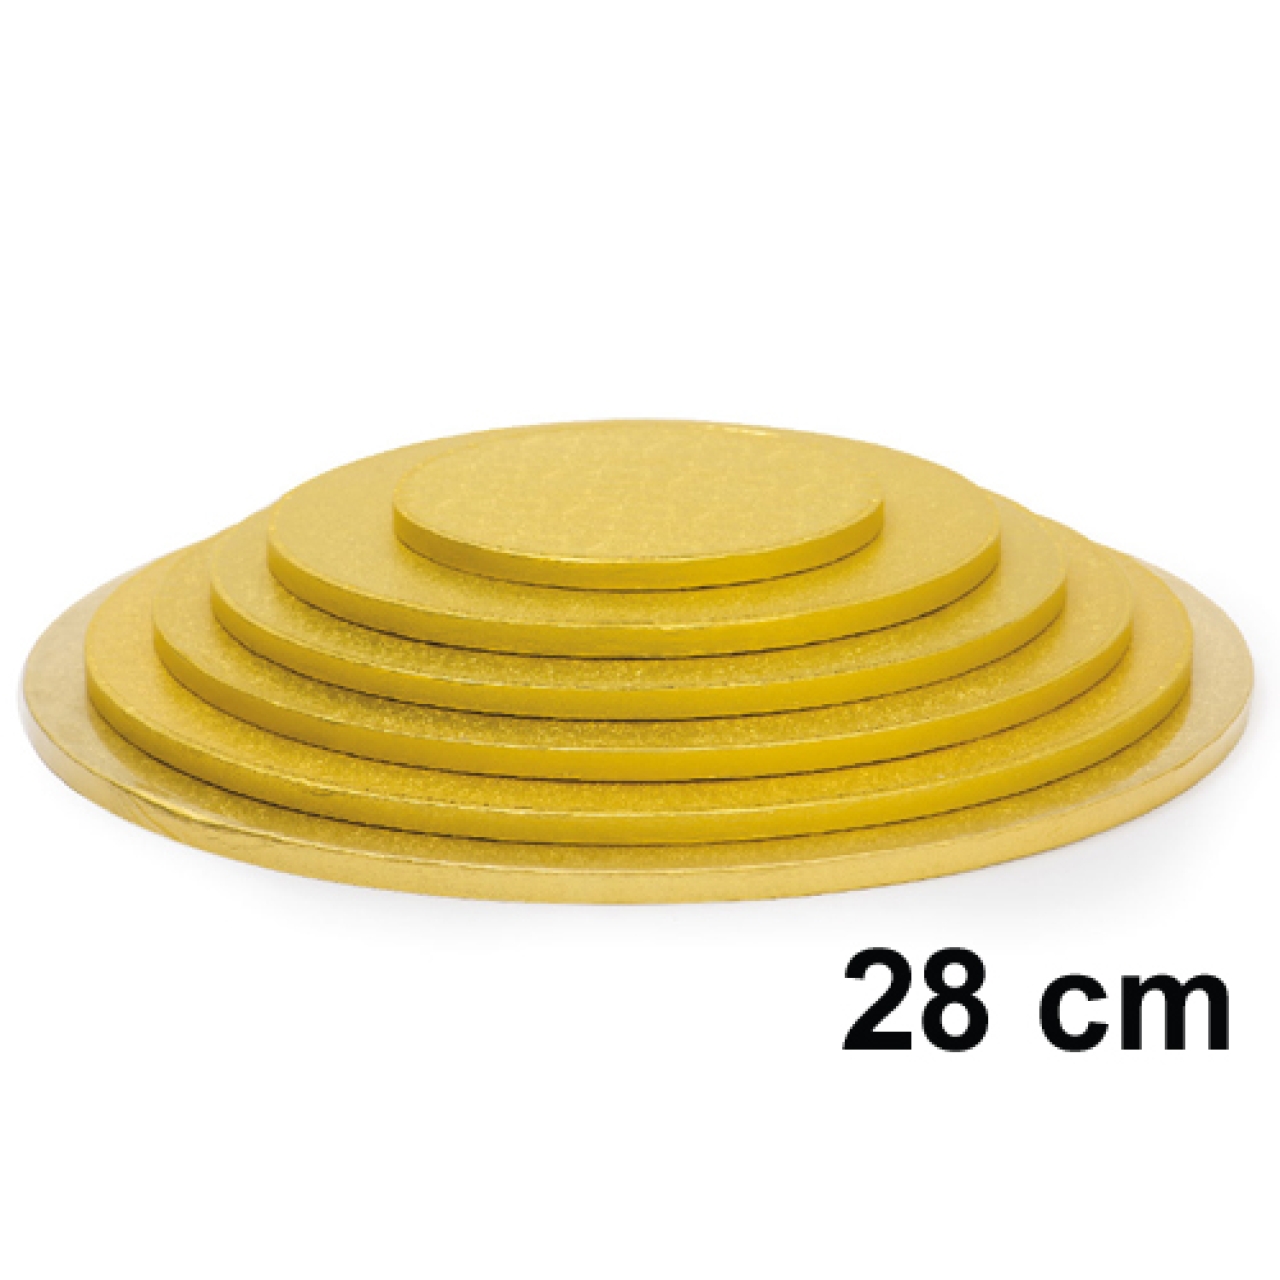 Tortenscheibe rund 28 cm 1,2 cm dick, gold